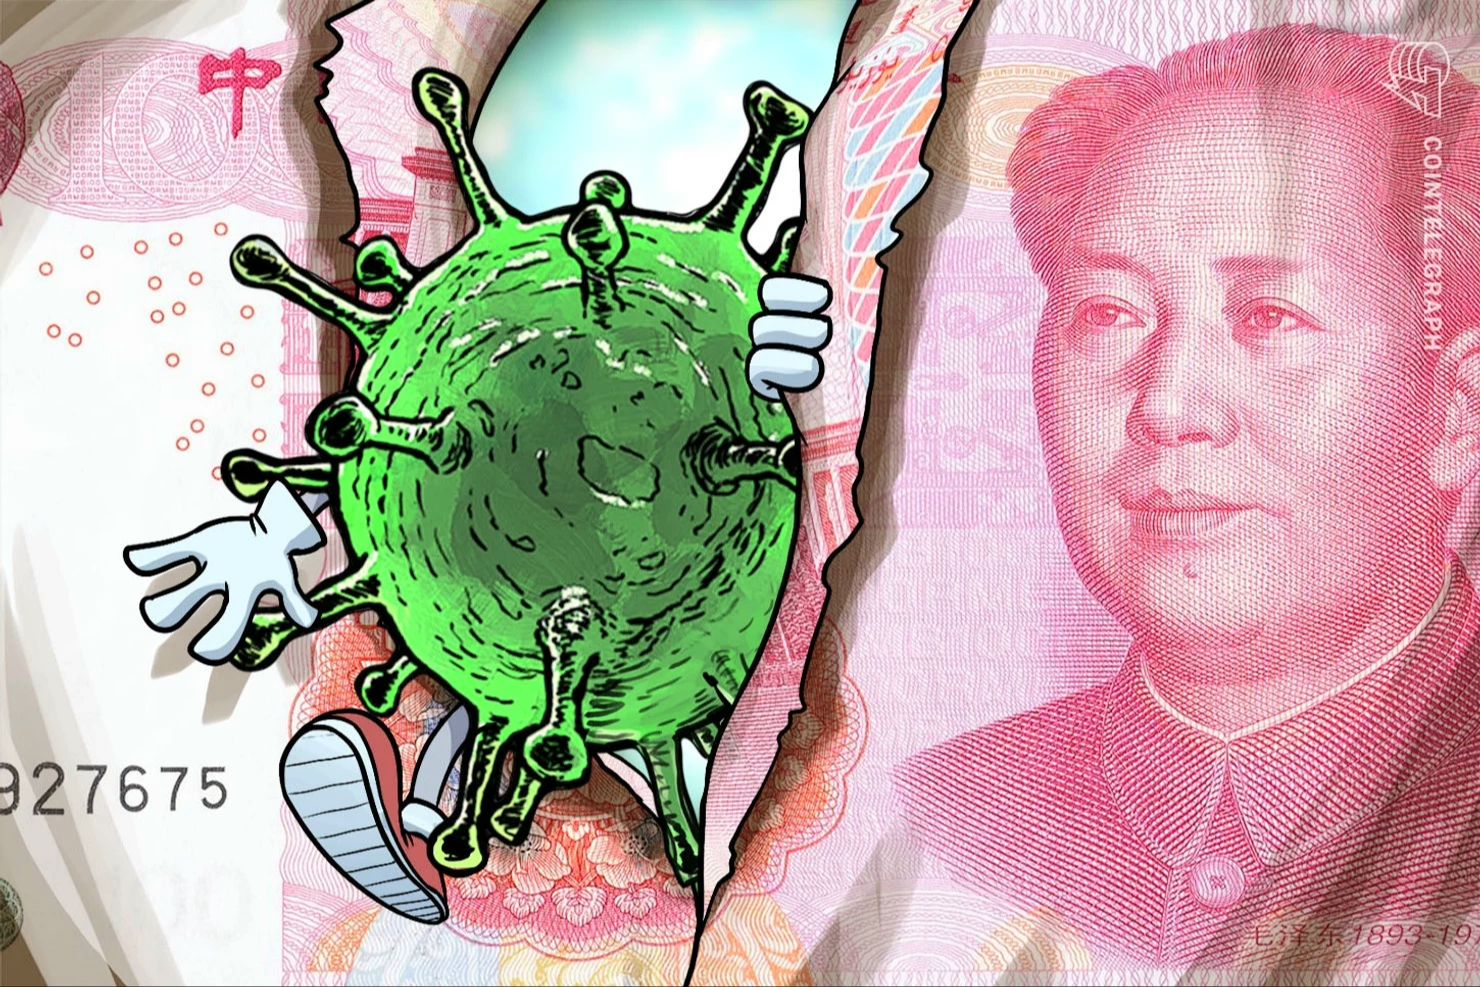 Trung Quốc kiểm dịch tiền mặt để ngăn chặn coronavirus, không phải vấn đề với bitcoin.